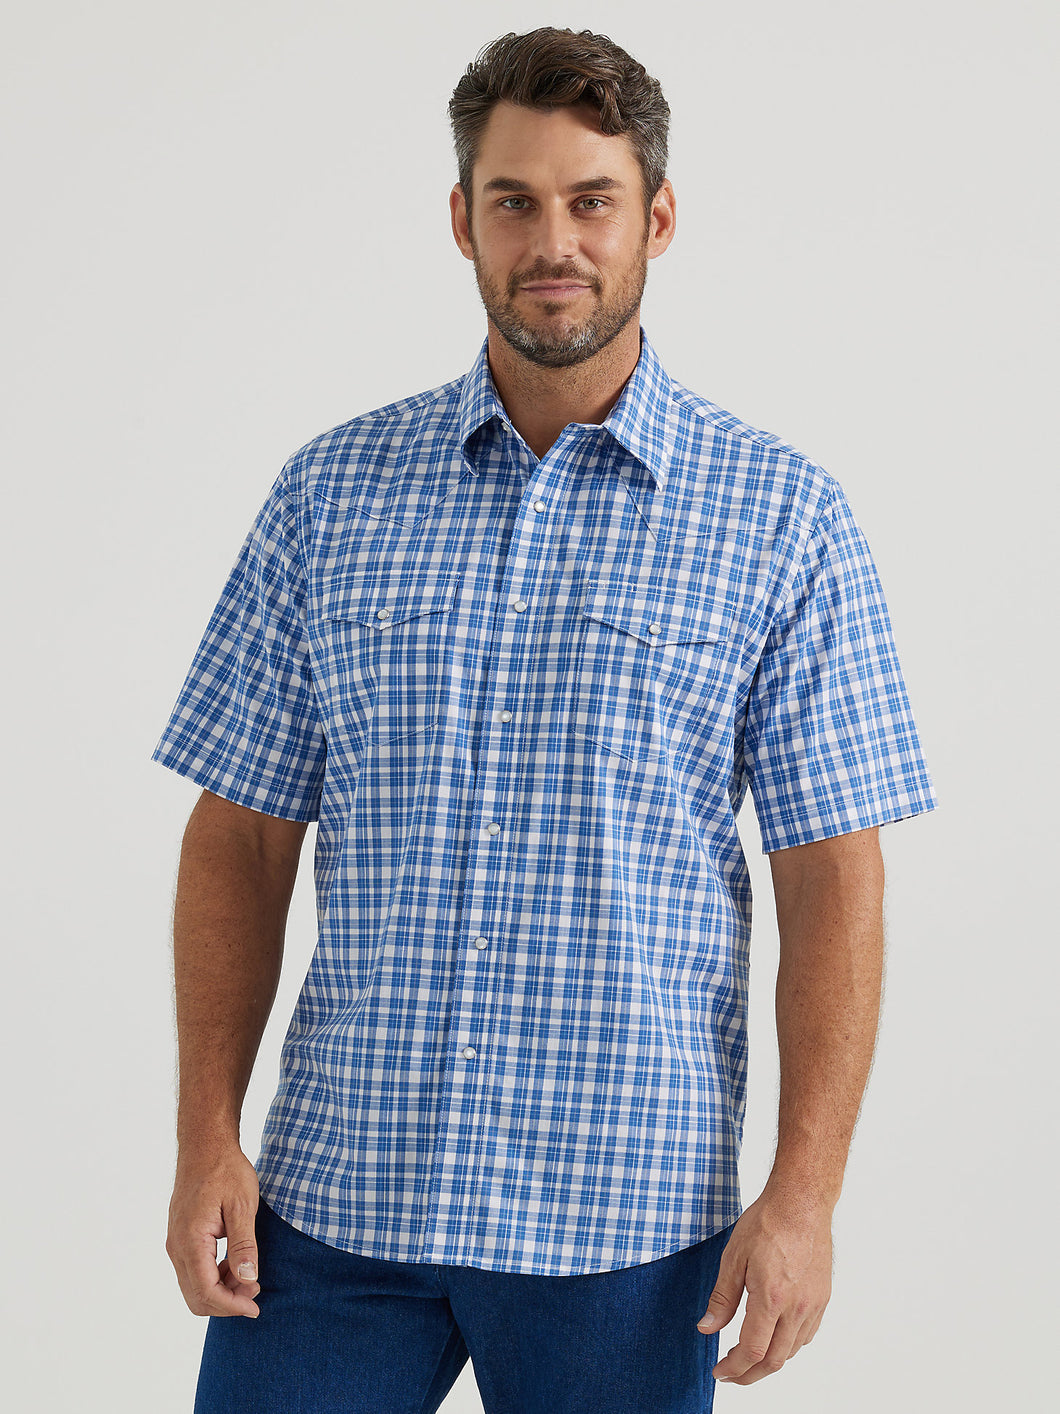 Men's Wrangler Classic Fit Short Sleeve Shirt 44409